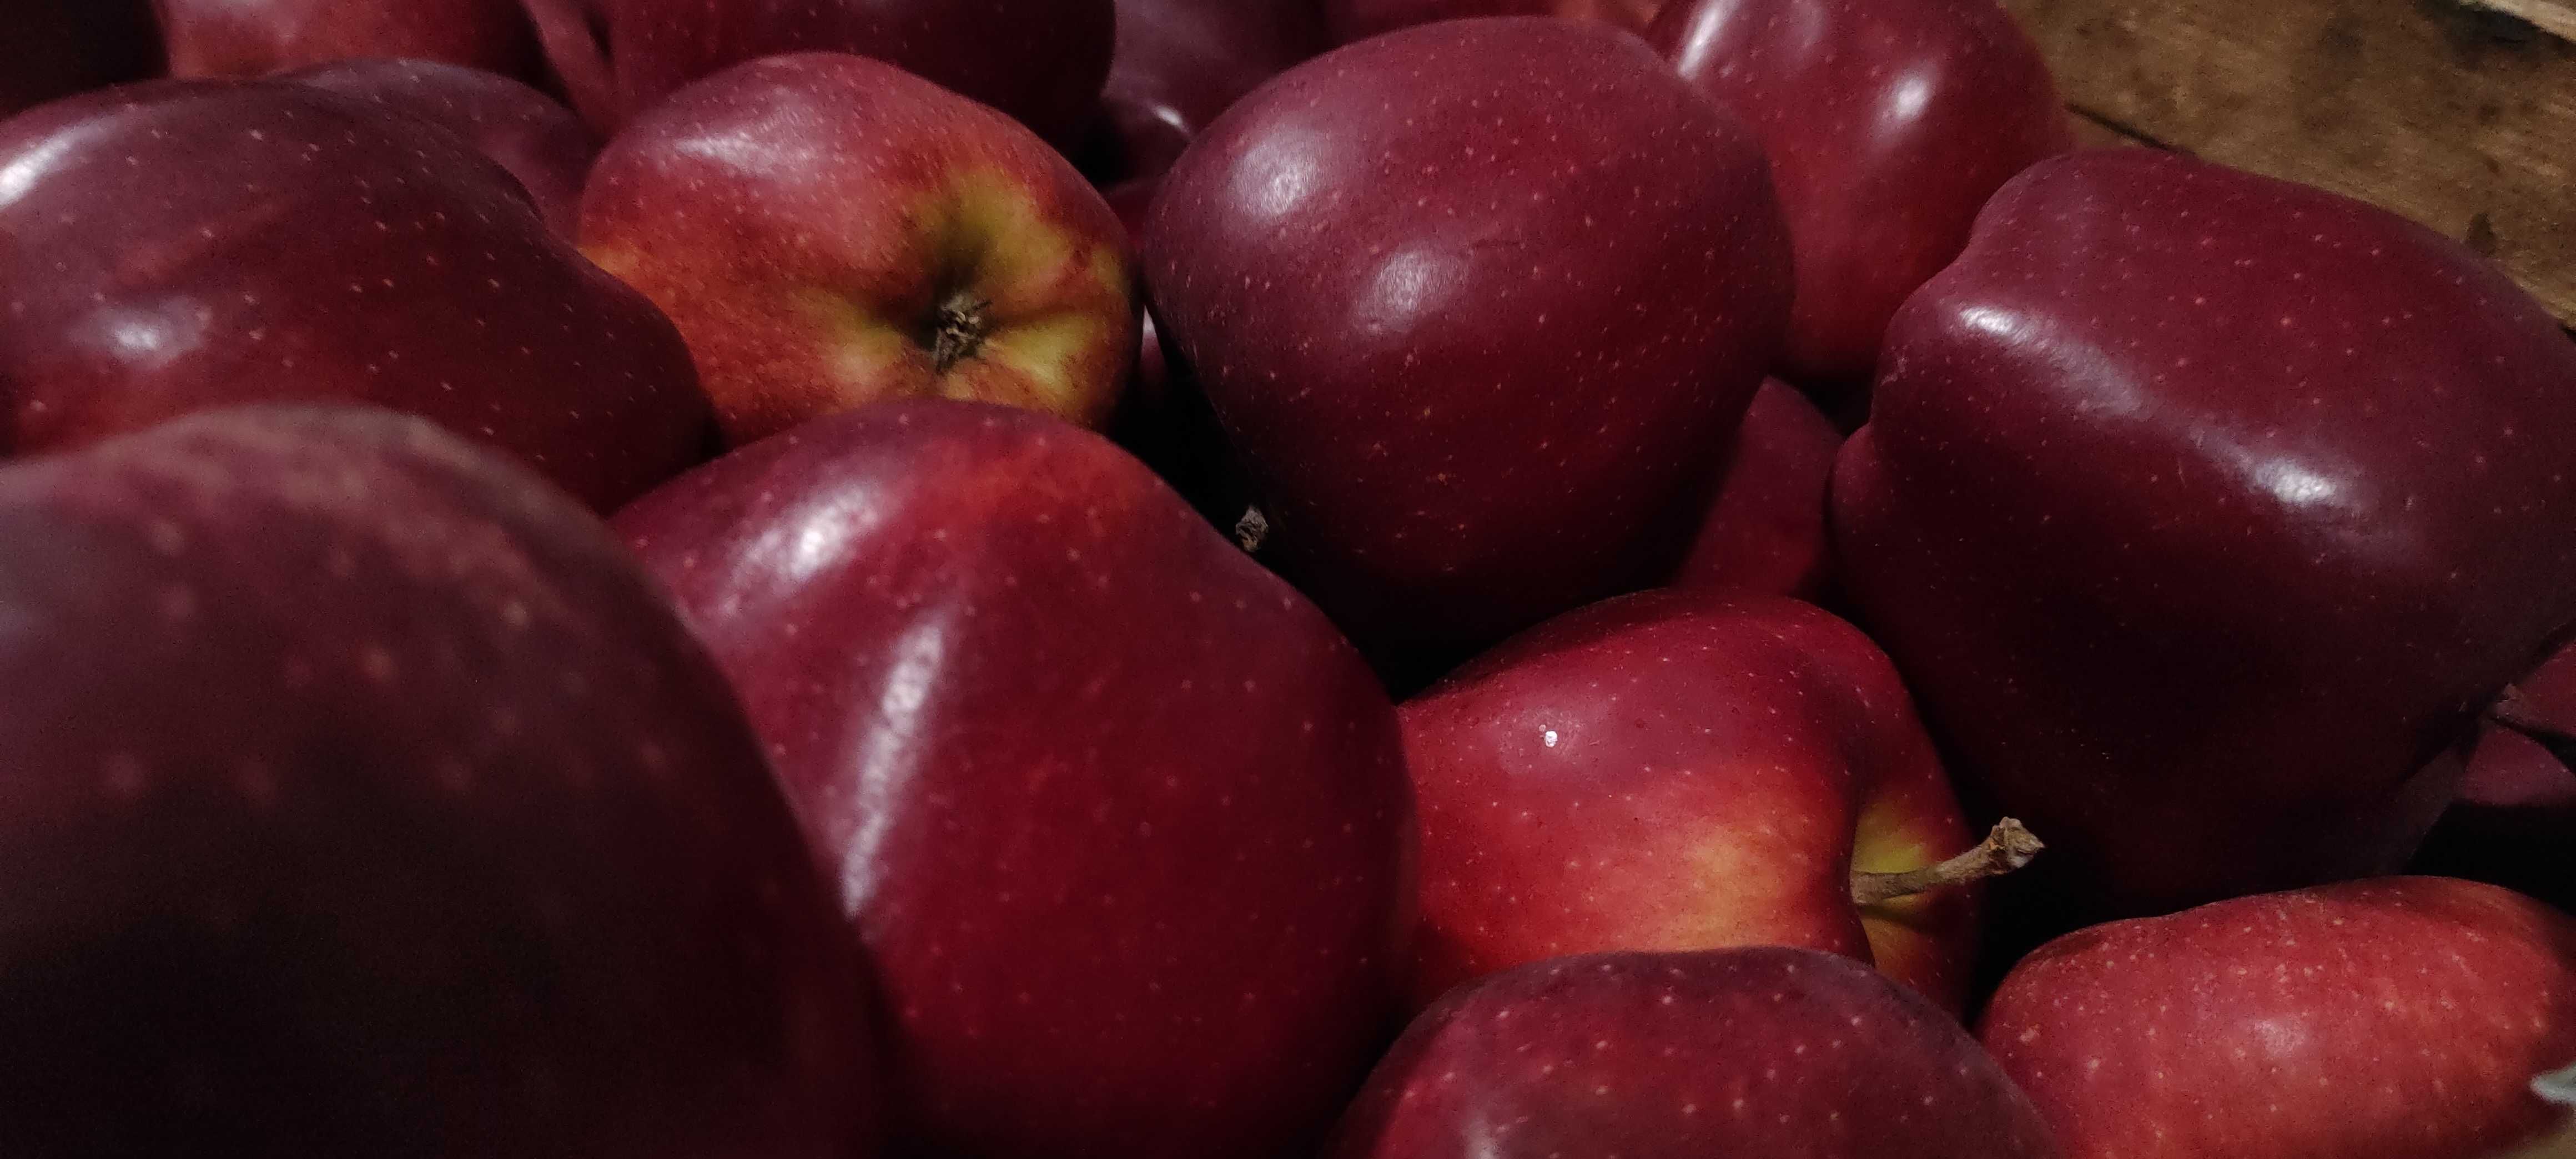 Świąteczna skrzynka jabłek mix odmian 18kg od sadownika